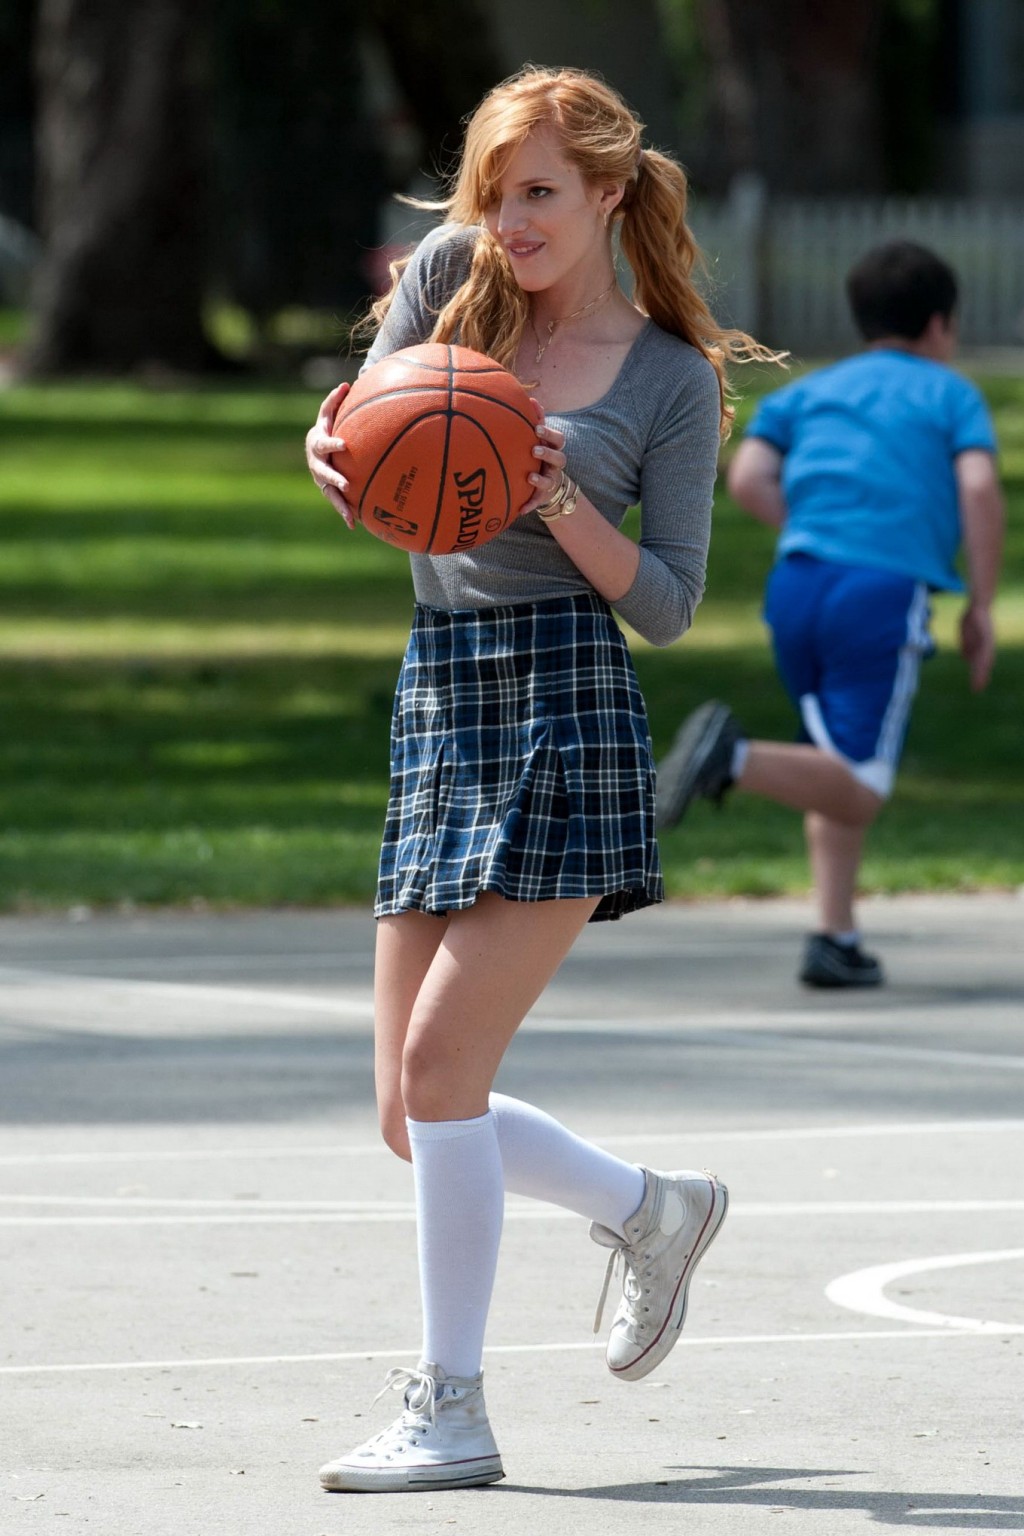 ベラ・ソーン、「Most ghos」の撮影で女子高生姿でバスケをする
 #75200798